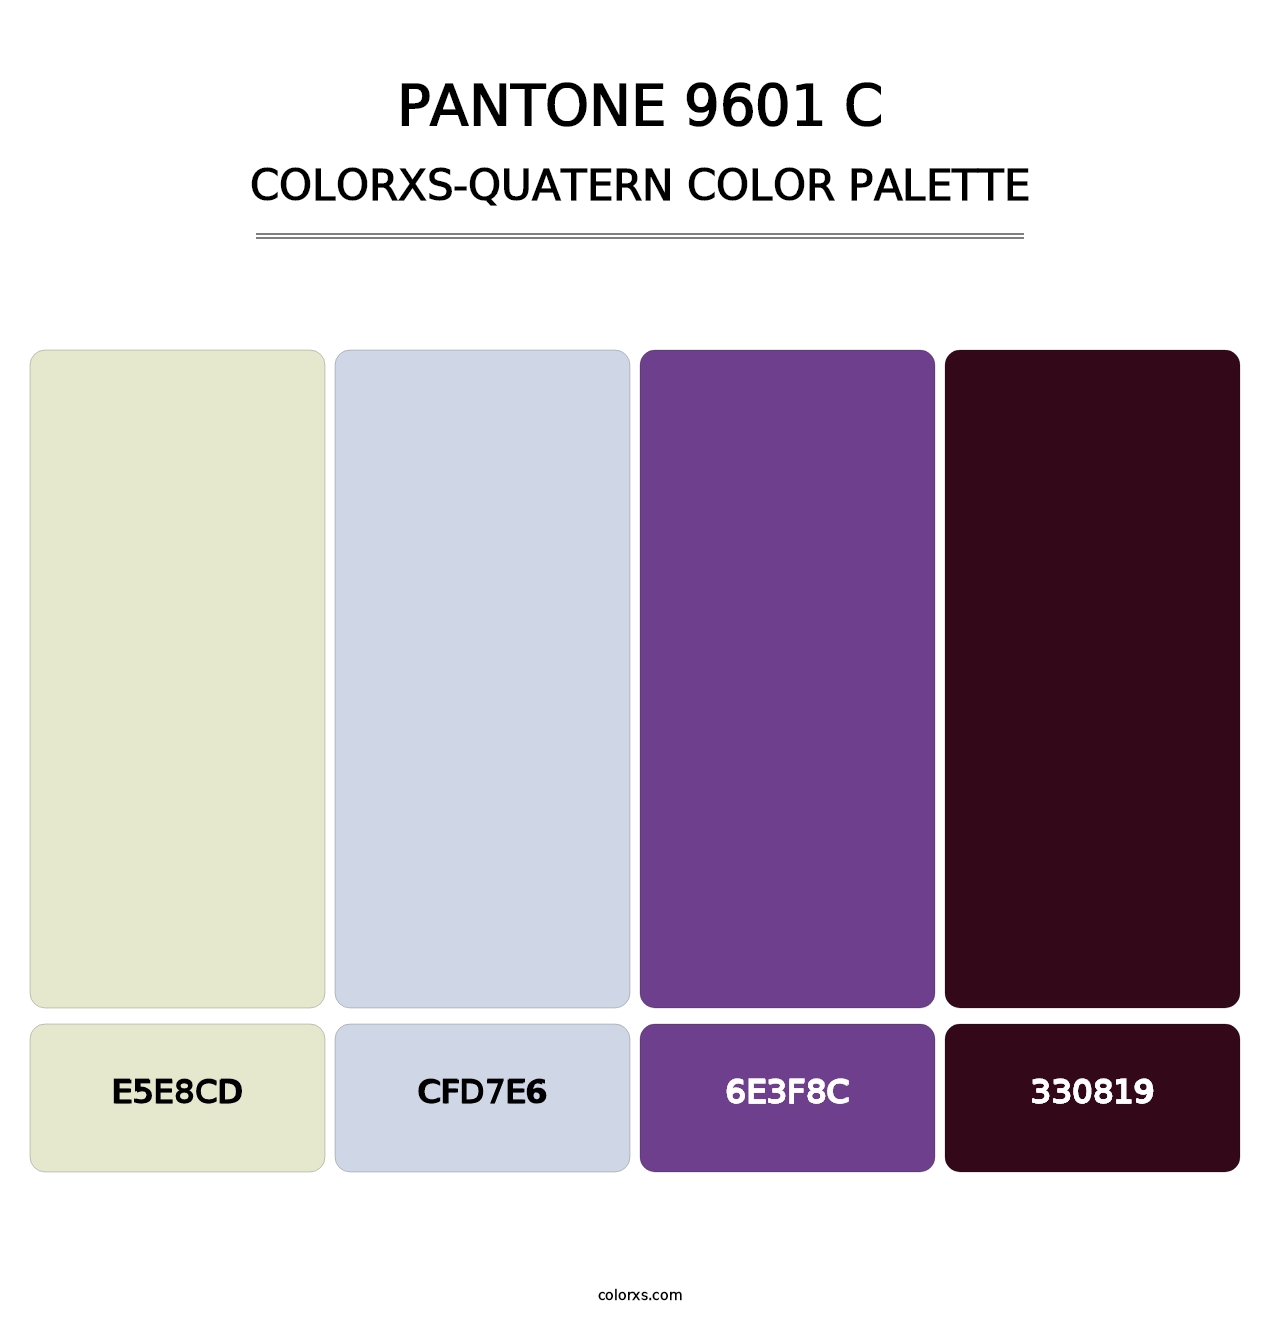 PANTONE 9601 C - Colorxs Quatern Palette